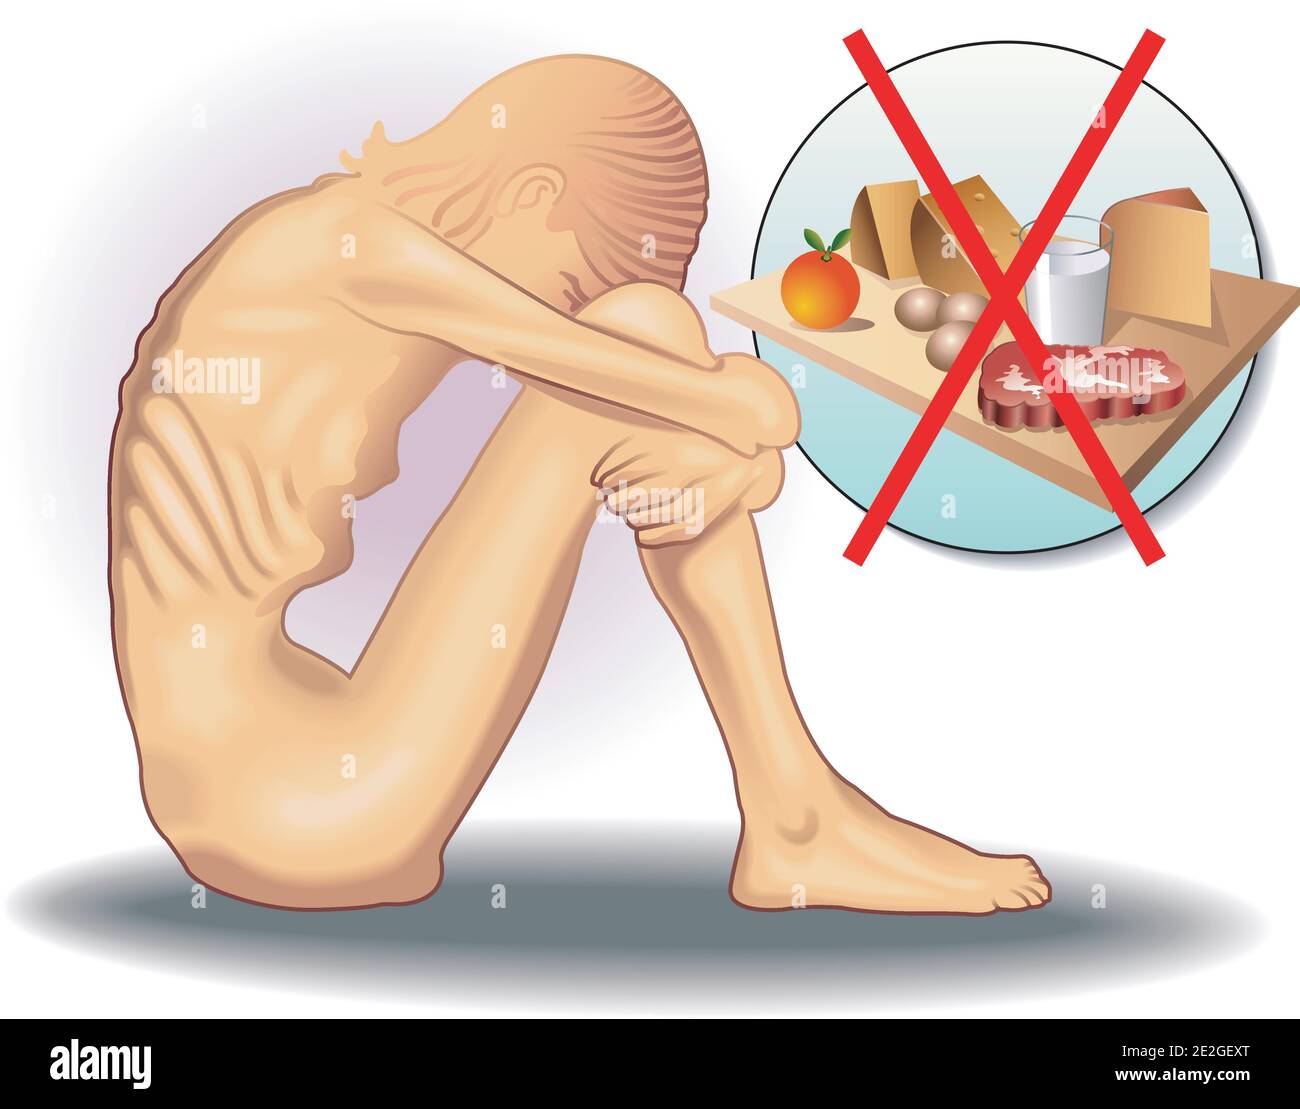 Illustrazione medica simbolica del disturbo alimentare chiamato anoressia Illustrazione Vettoriale